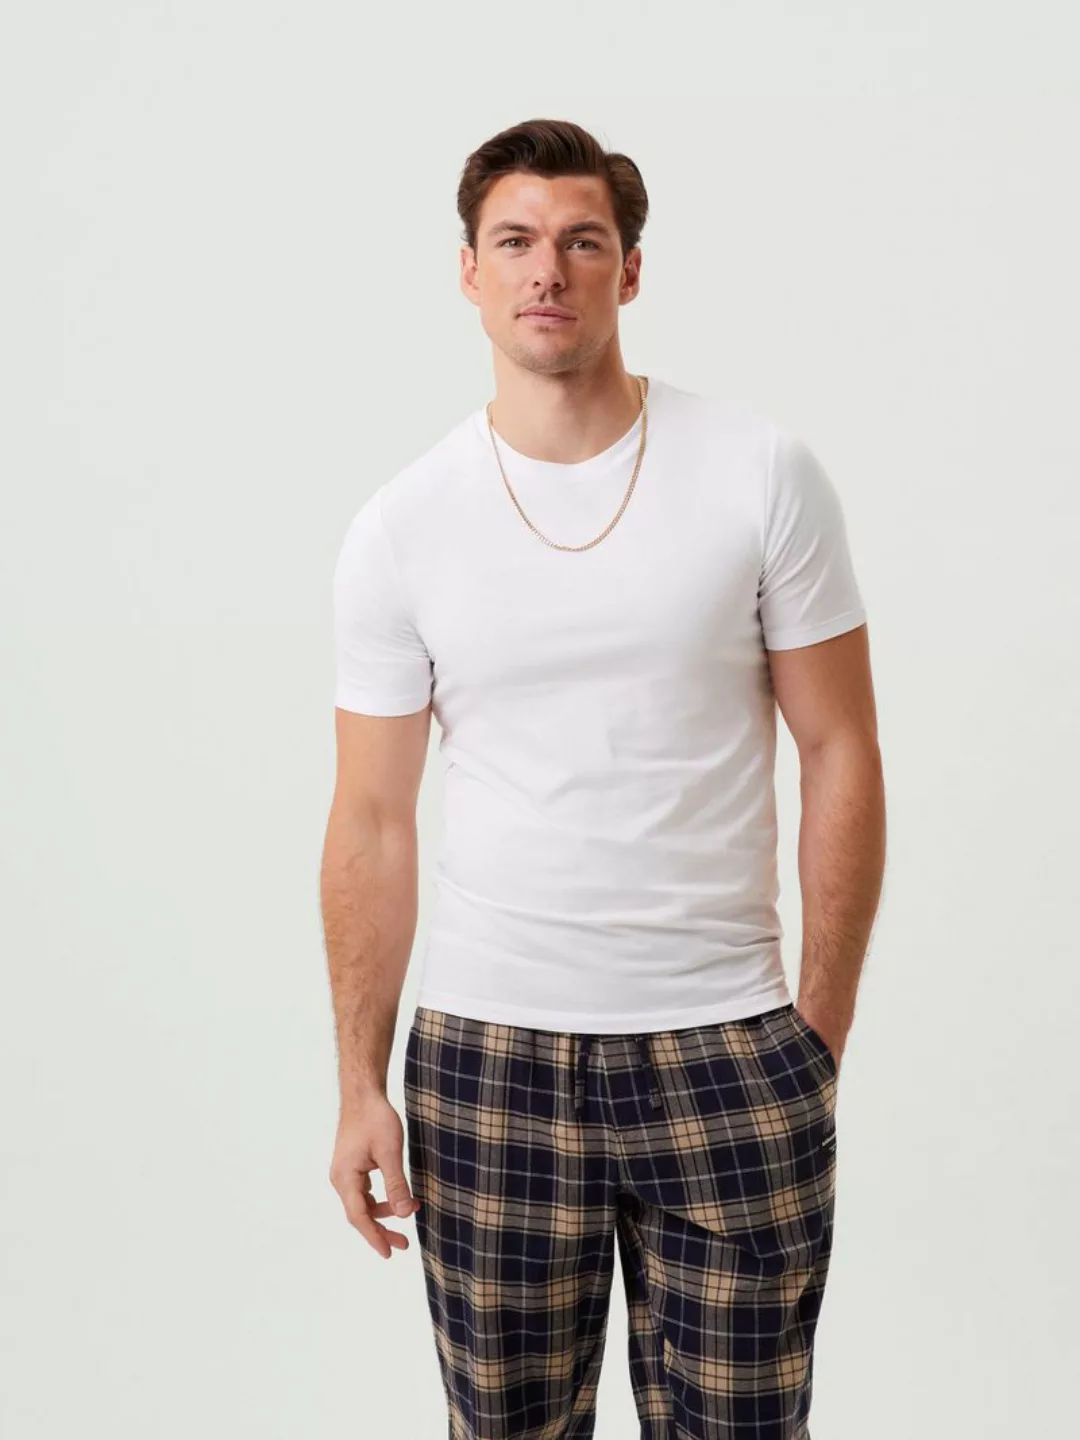 Bjorn Borg Pyjama Set Multicolour - Größe XL günstig online kaufen